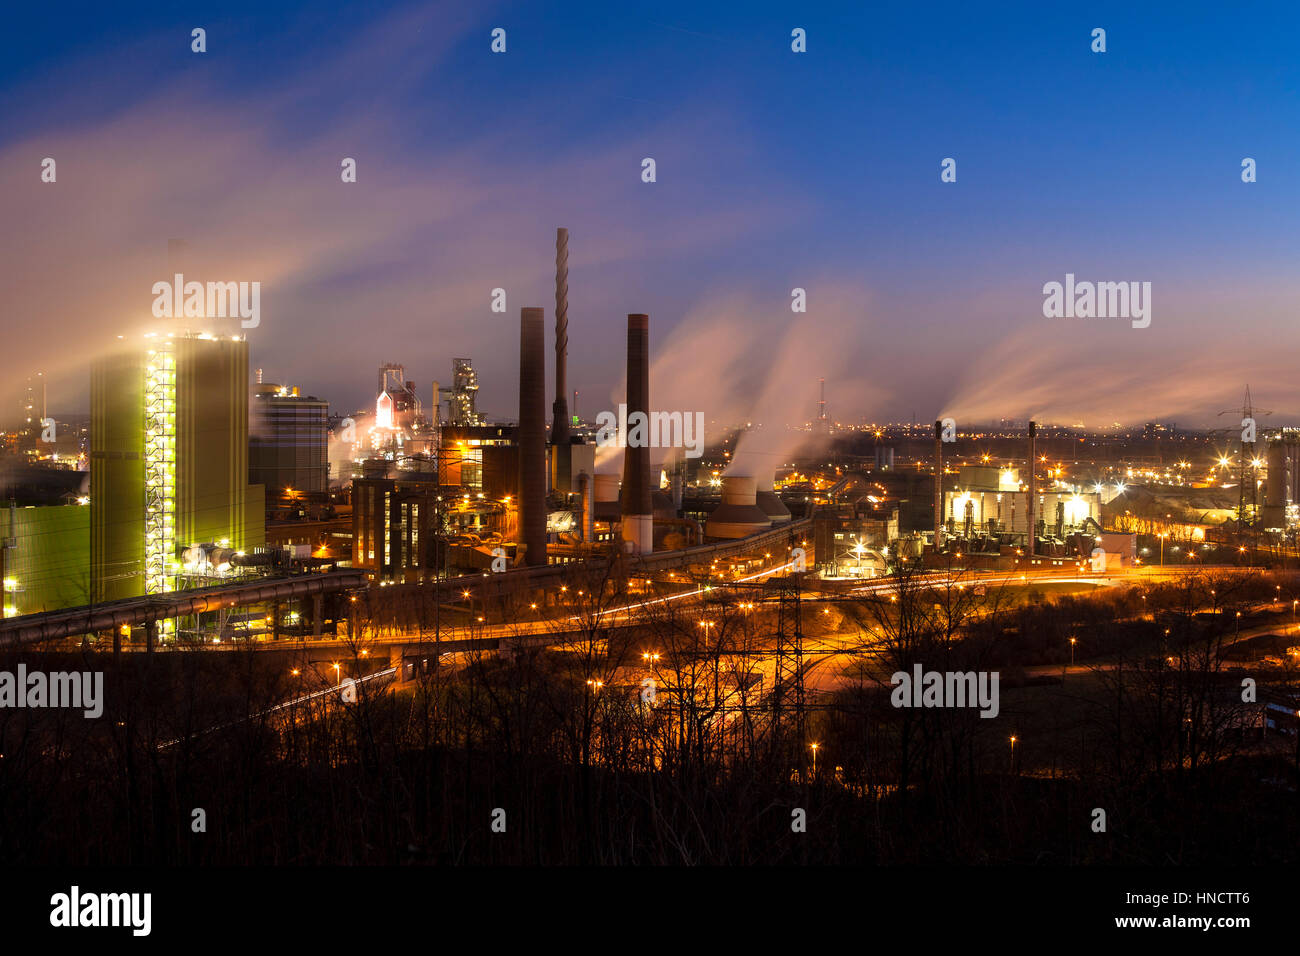 In Germania, in Renania settentrionale-Vestfalia, la zona della Ruhr, Duisburg, ThyssenKrupp Steel impianto nel quartiere Bruckhausen, vista dal Alsumer Berg. Foto Stock